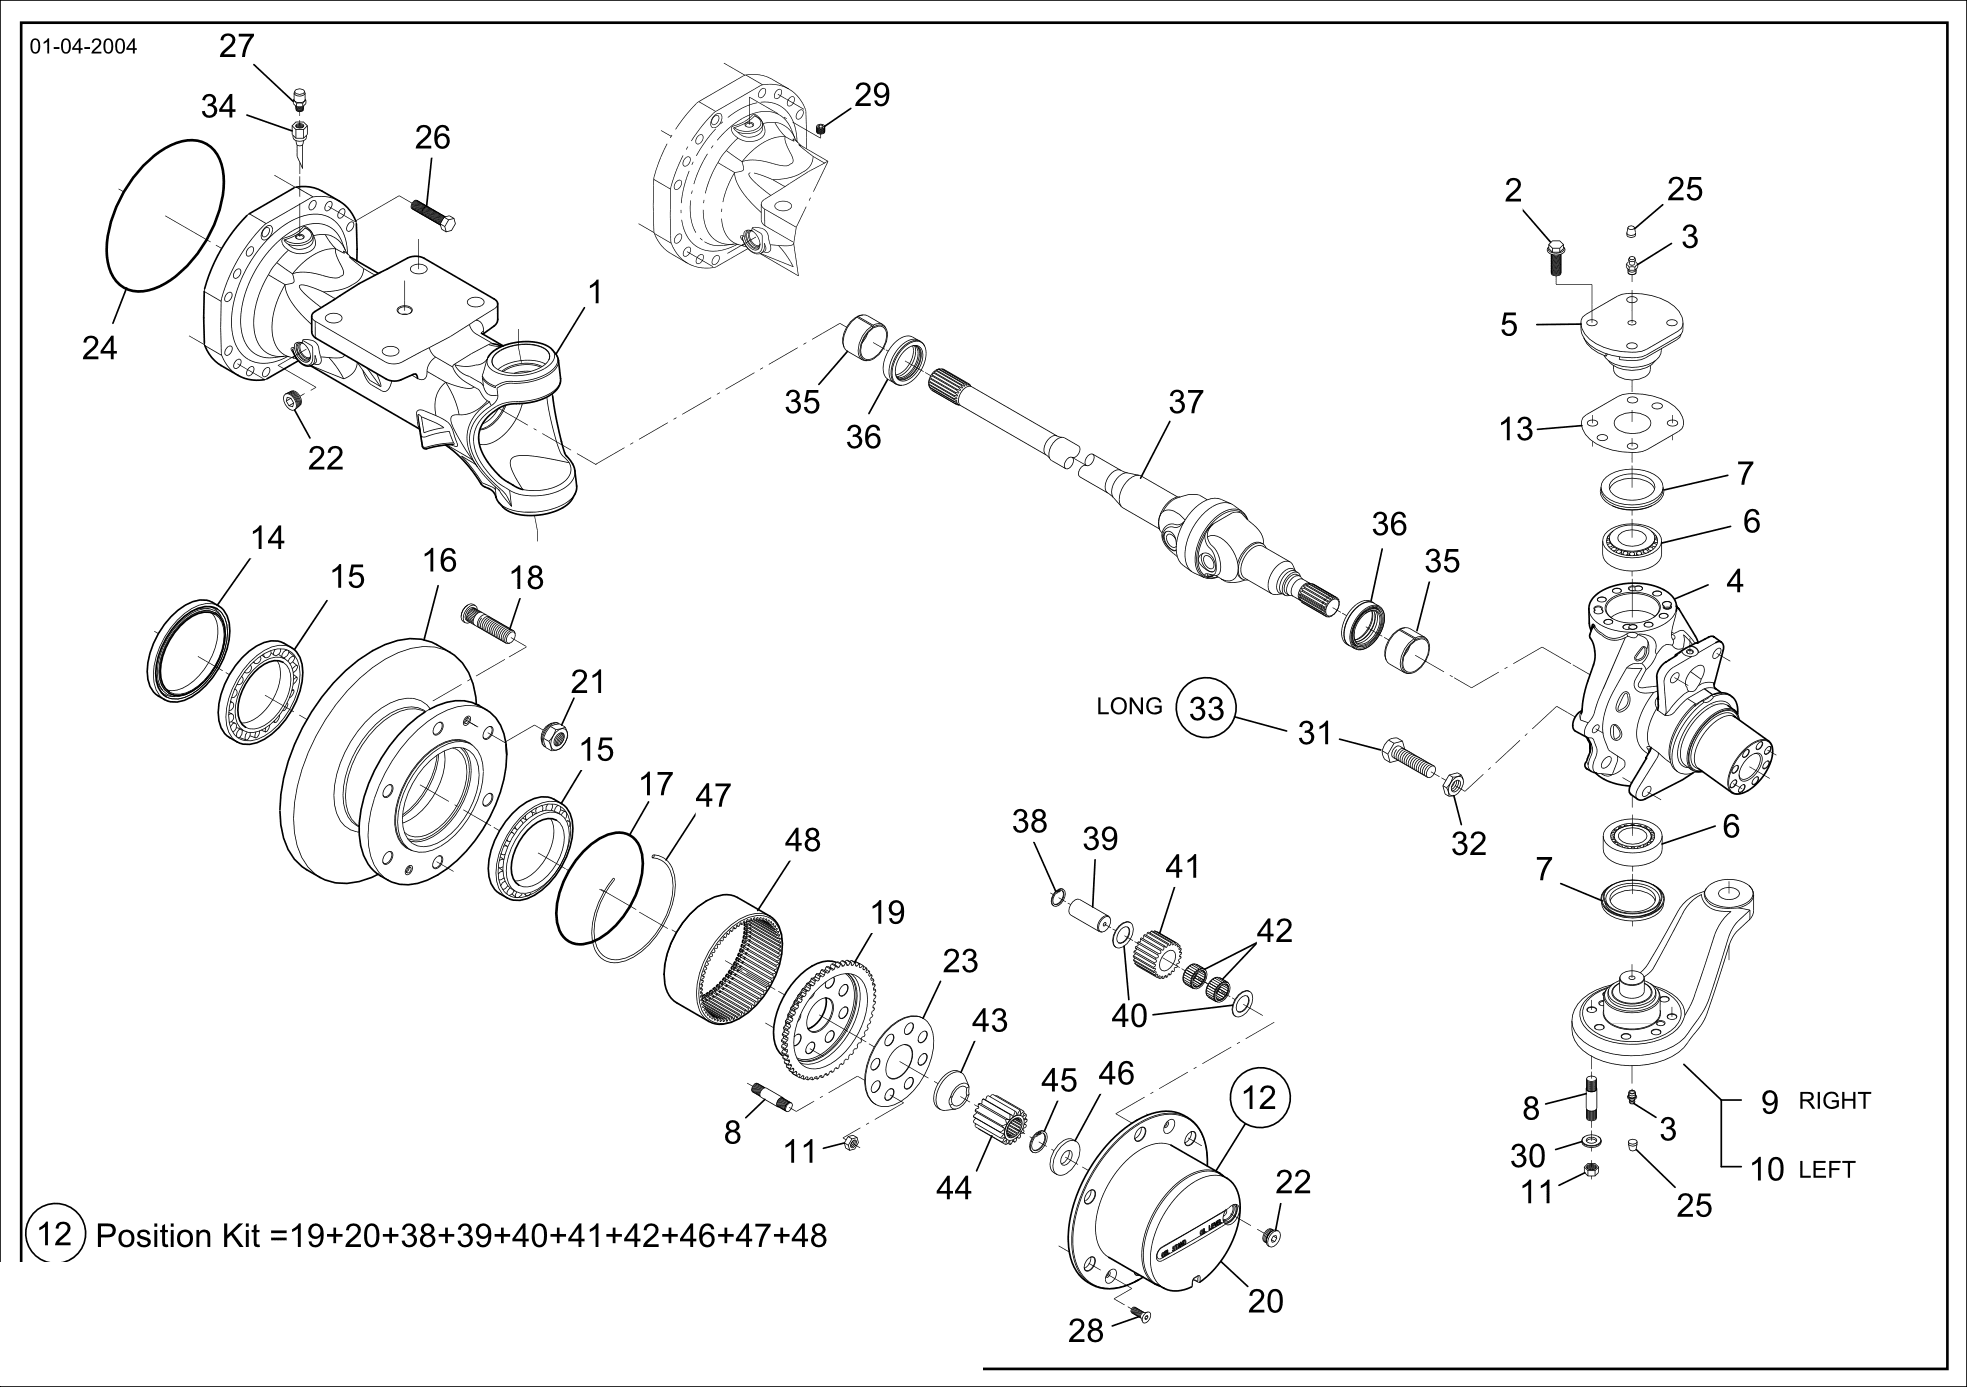 drawing for SCHOPF MASCHINENBAU GMBH 101186 - SPACER (figure 4)